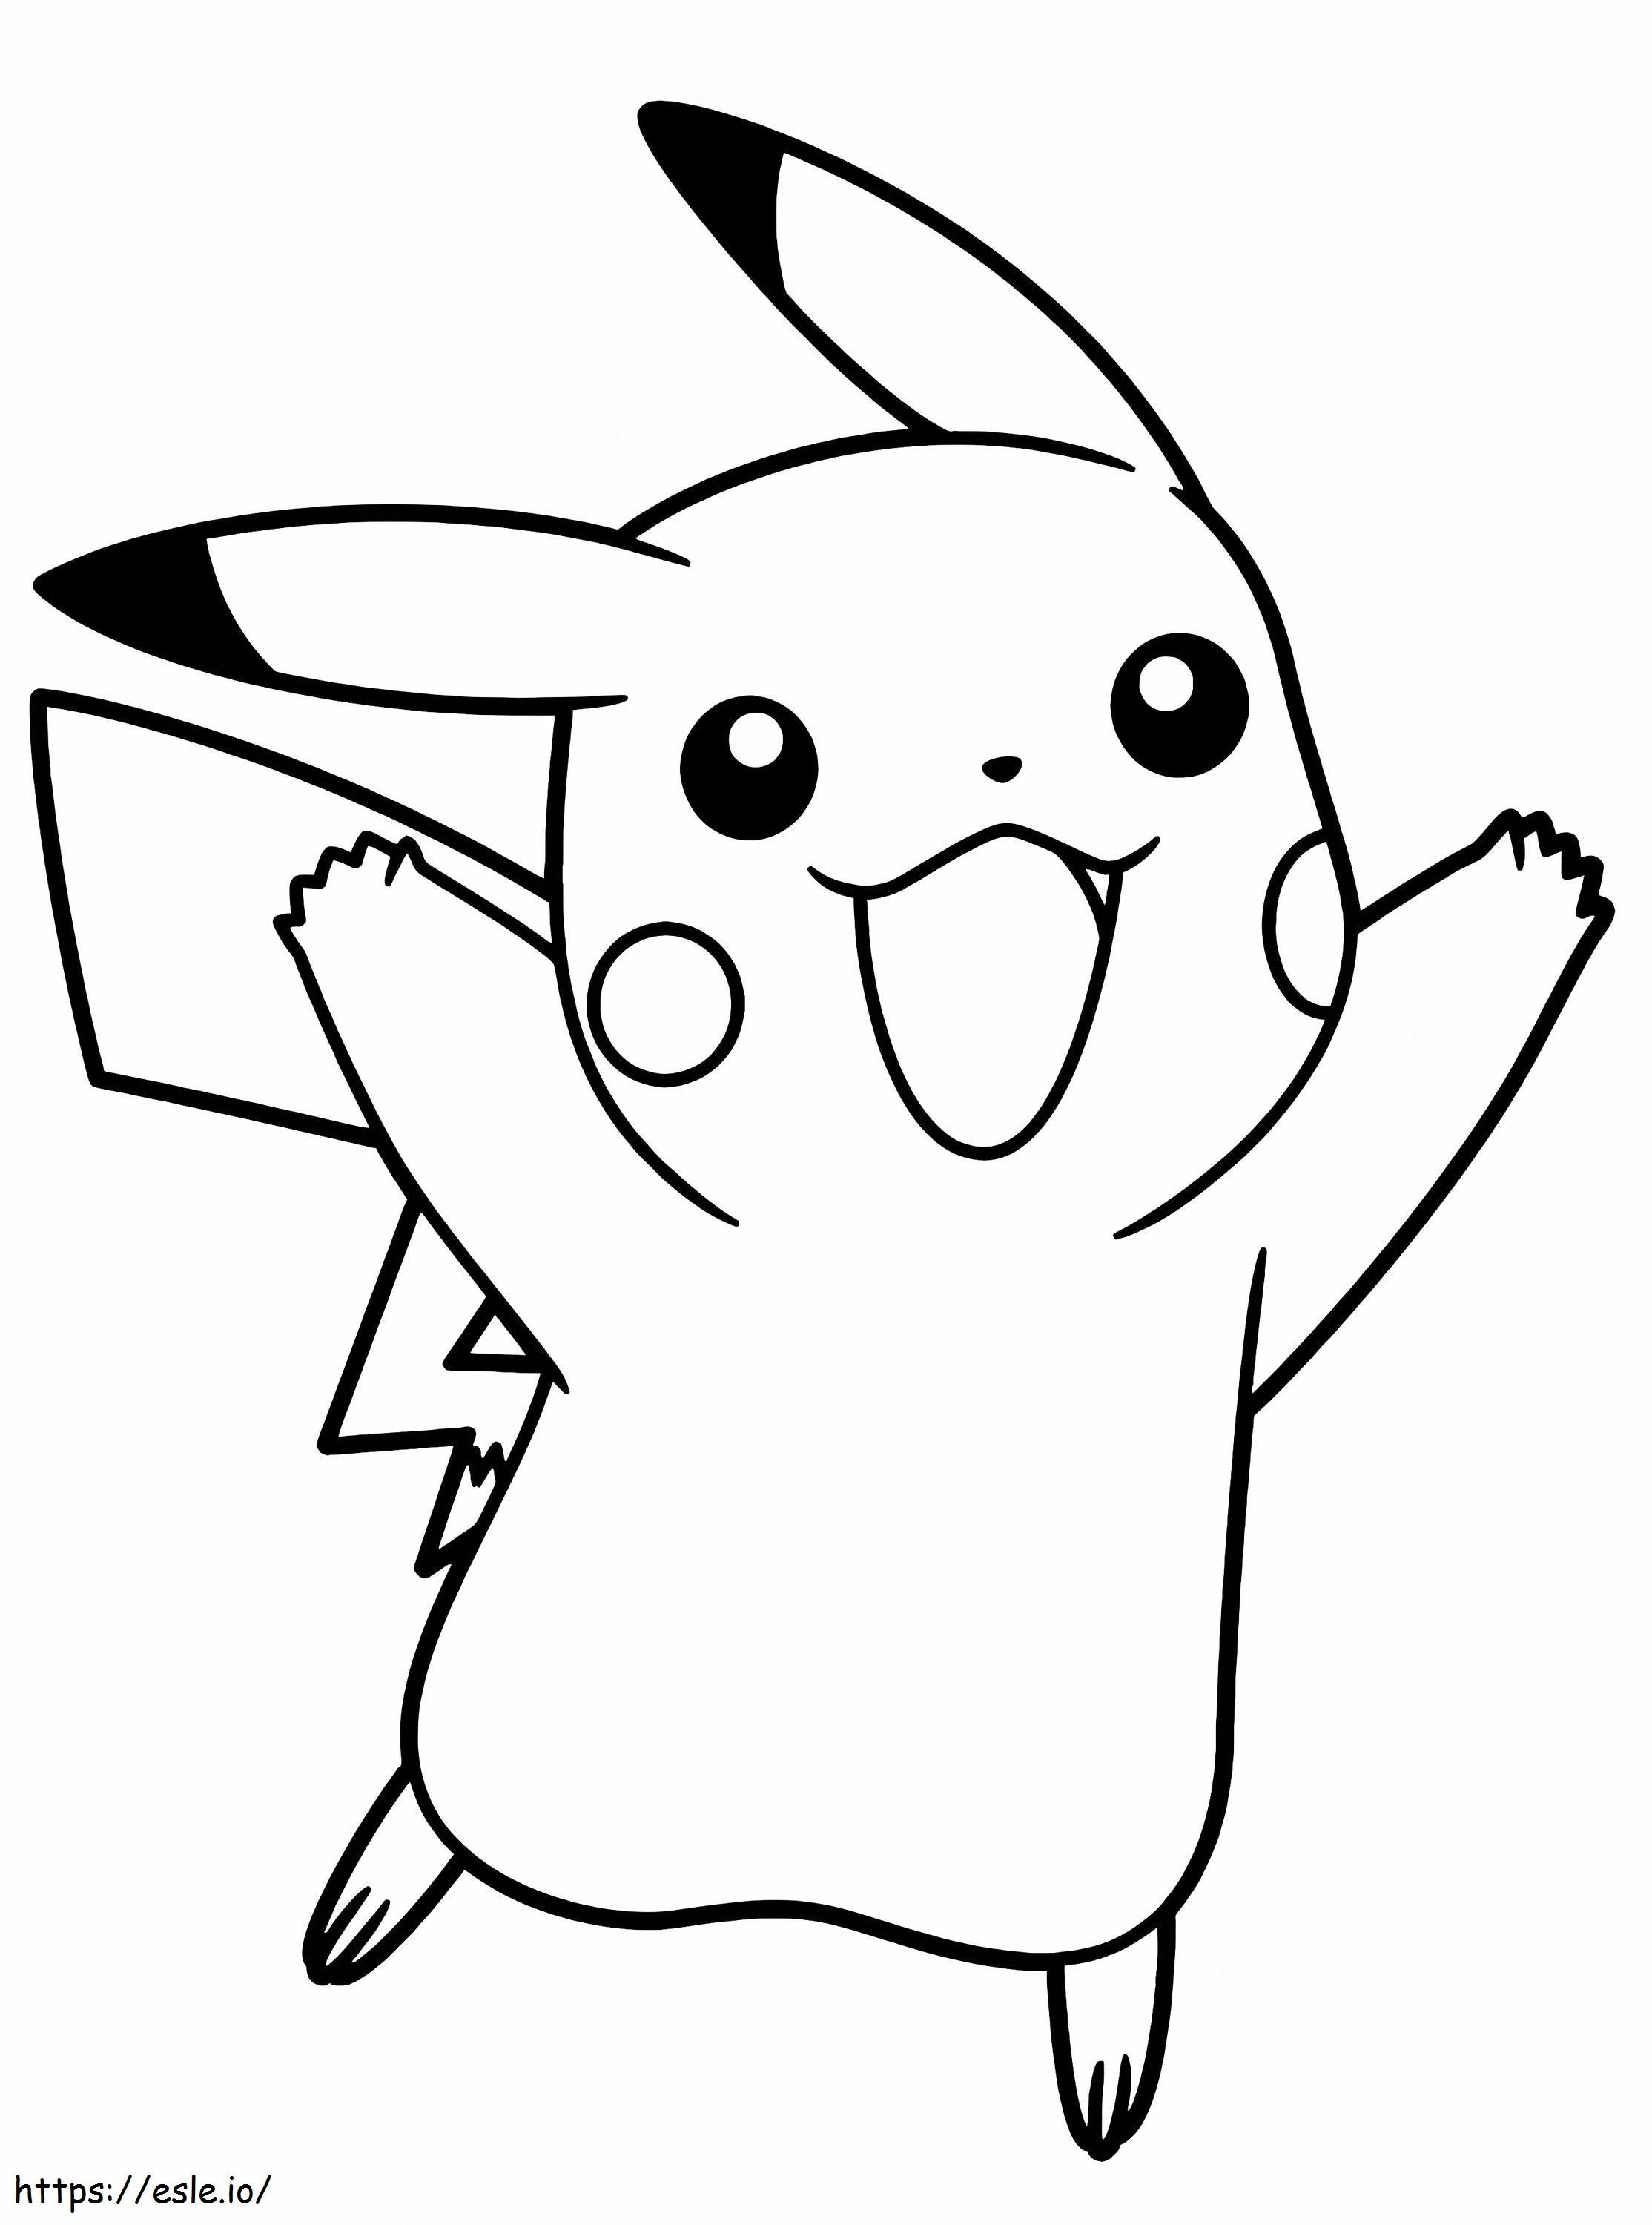 Fröhliches Pikachu ausmalbilder